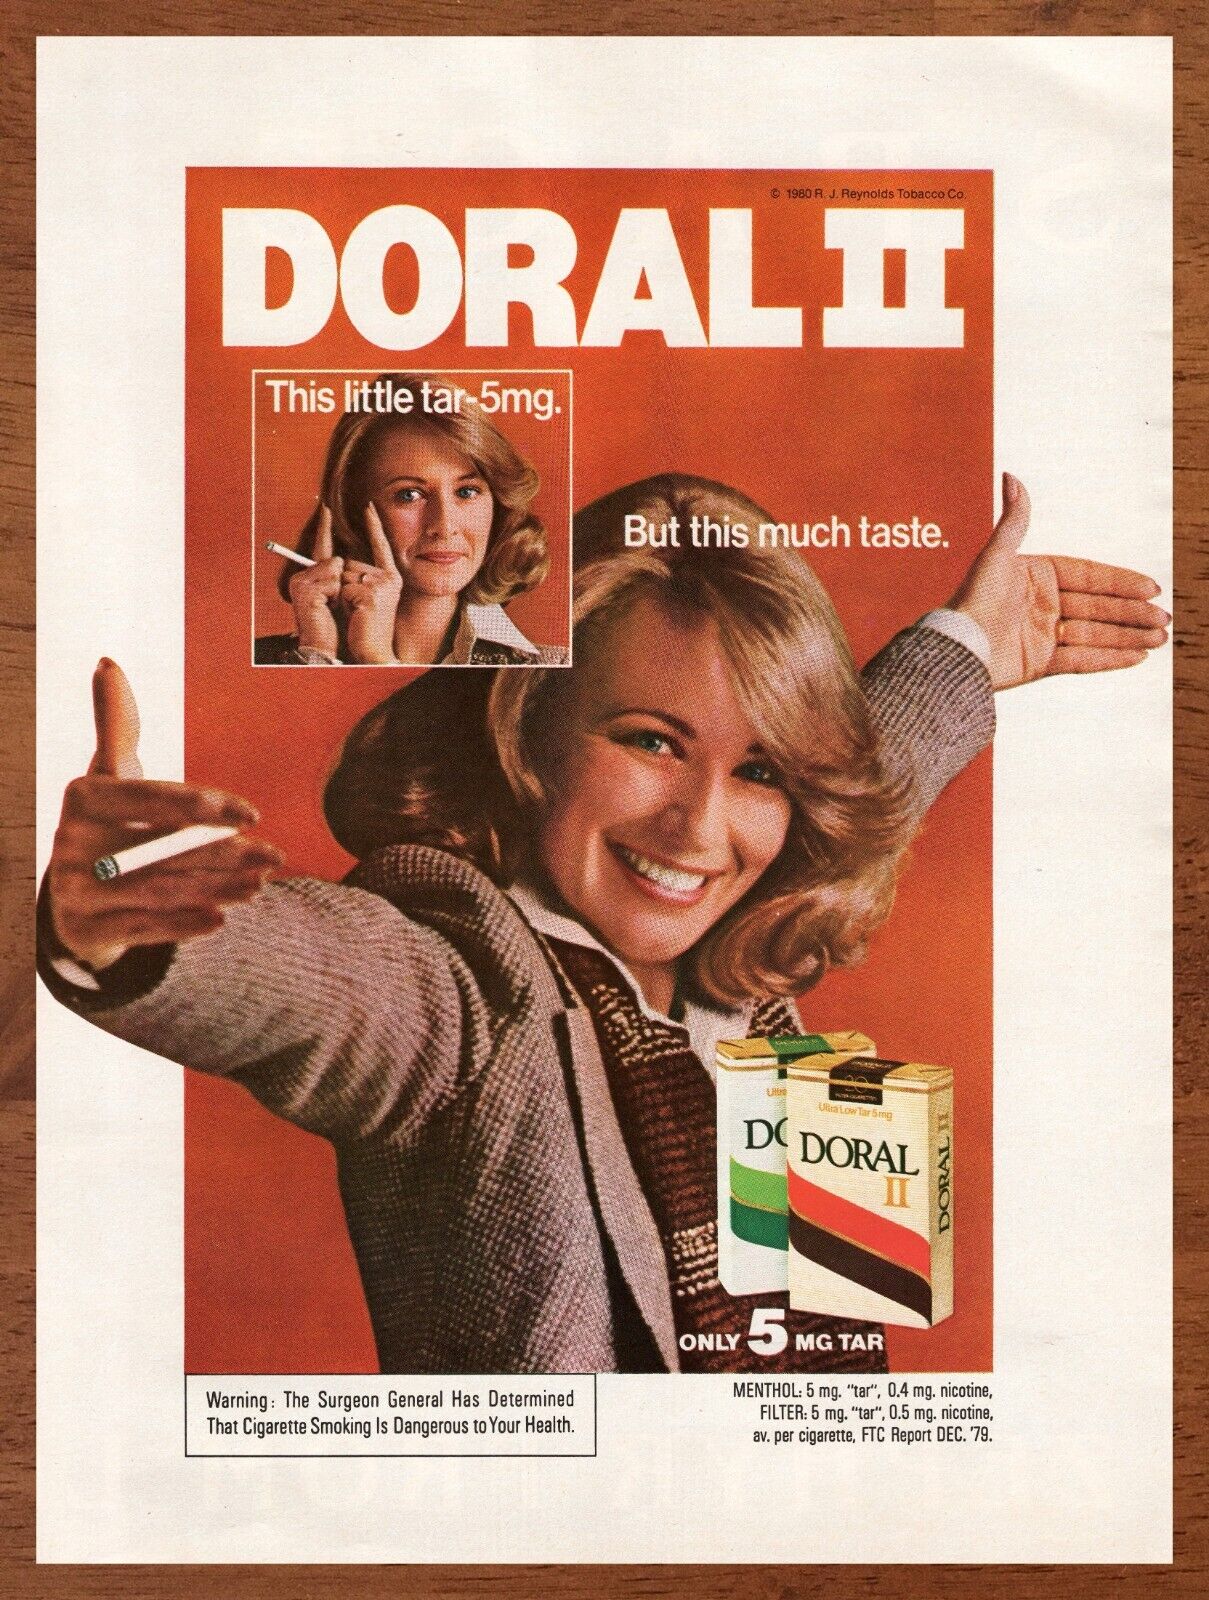 1980 Doral II Cigarettes Vintage Print Ad/Poster Retro Man Cave Bar Art Décor 